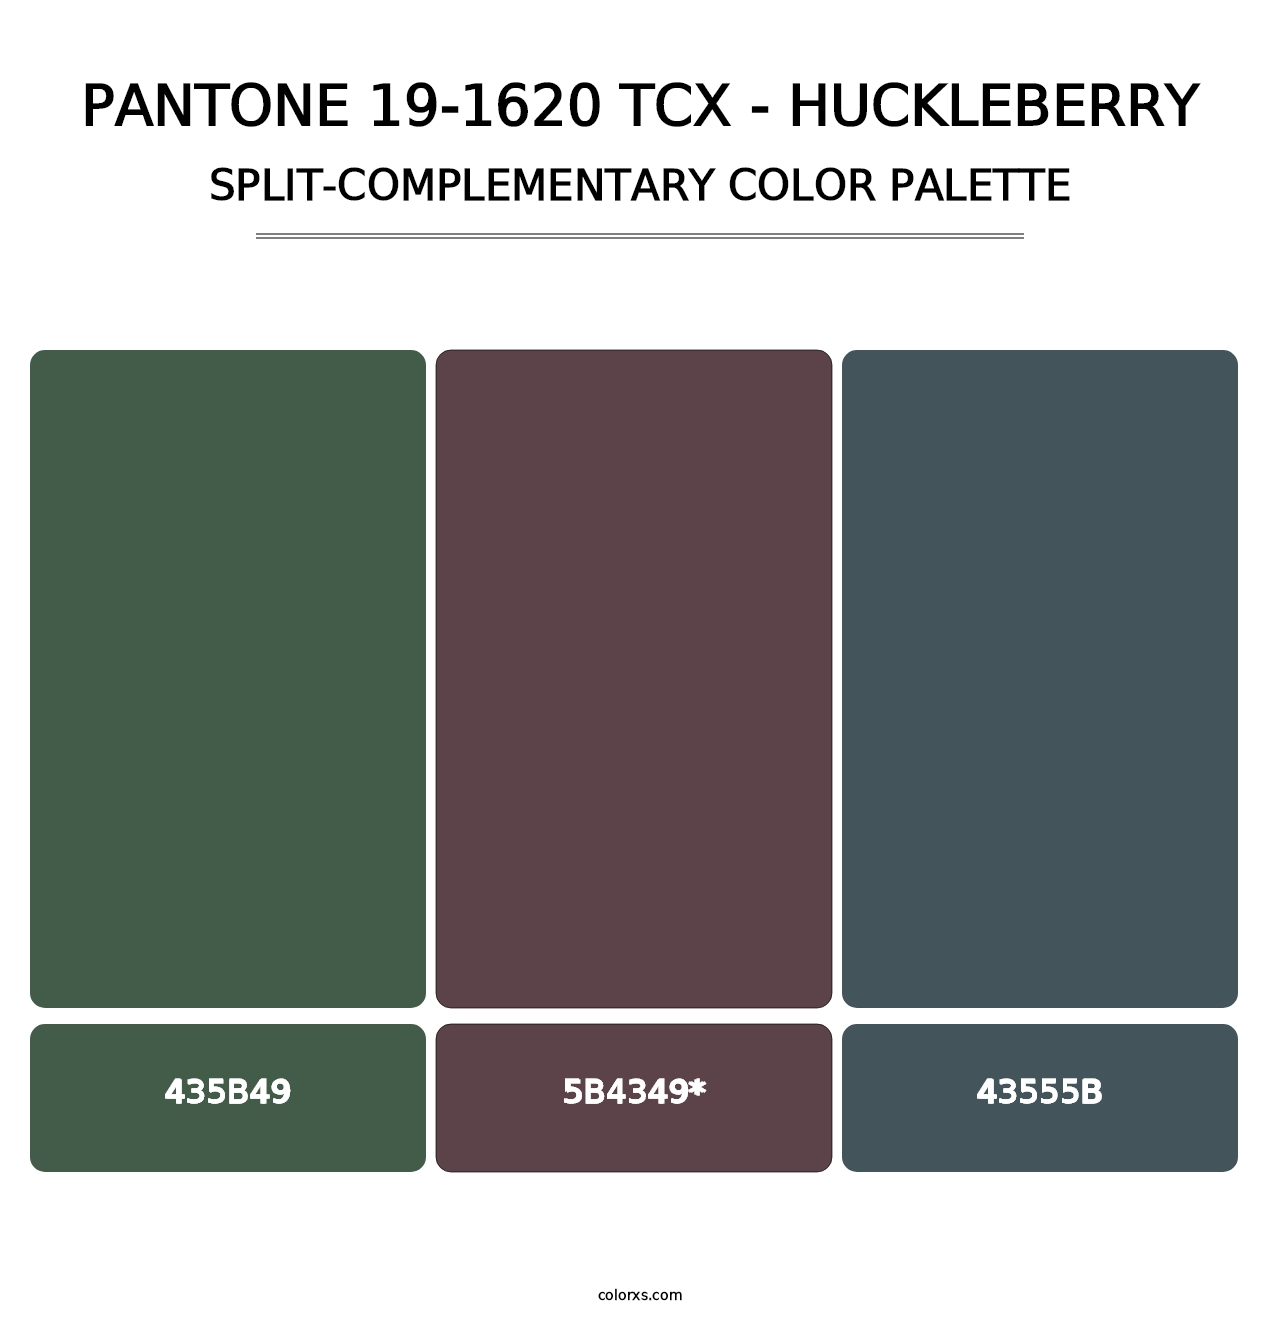 PANTONE 19-1620 TCX - Huckleberry - Split-Complementary Color Palette